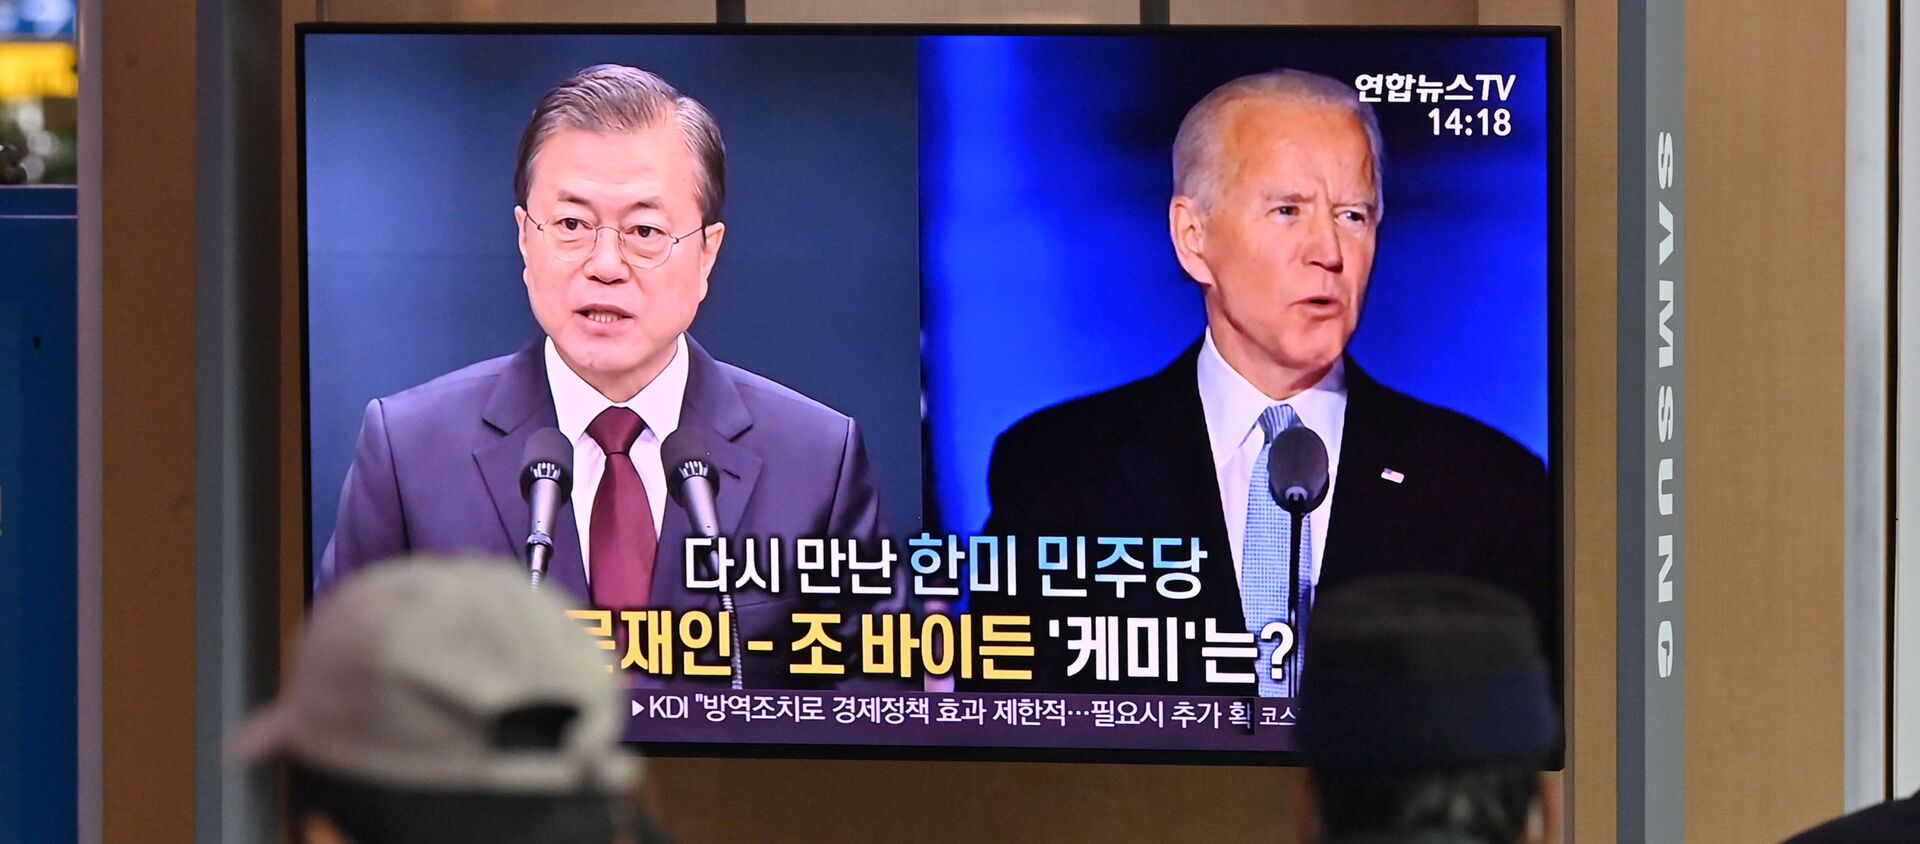 Joe Biden và Tổng thống Hàn Quốc Moon Jaein trên màn hình TV. Ngày 9 tháng 11 năm 2020. - Sputnik Việt Nam, 1920, 13.11.2020